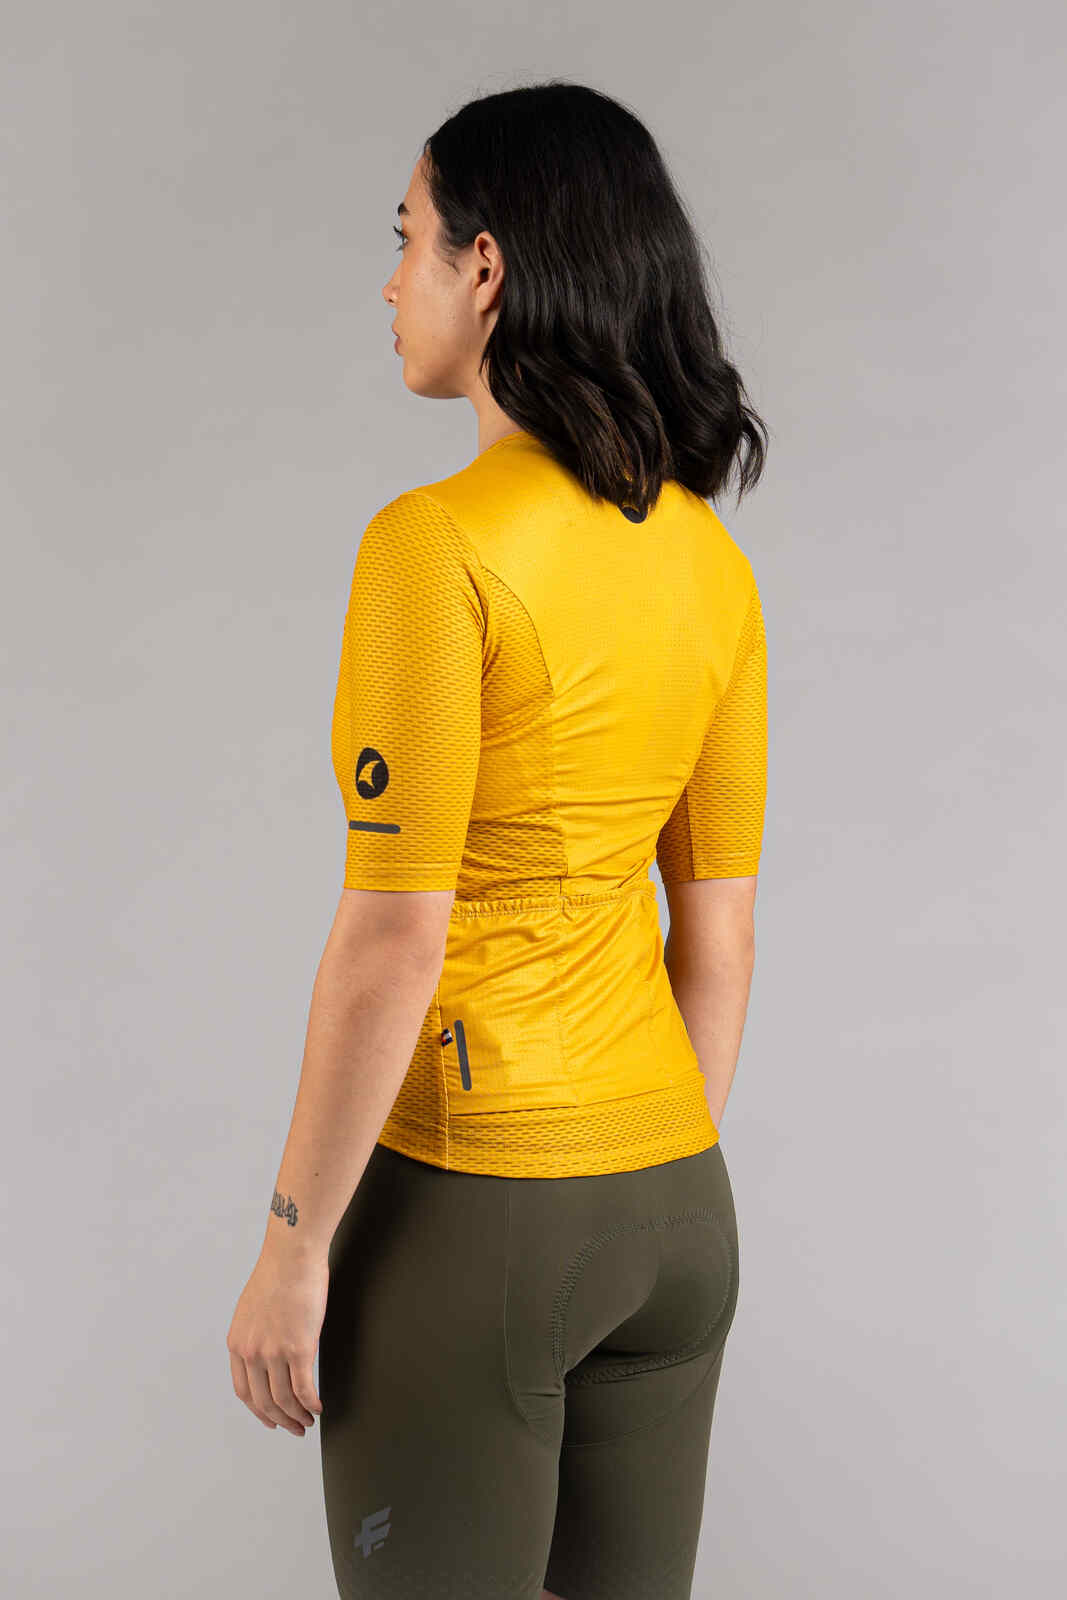 Women's Golden Yellow Mesh Cycling Jersey - Back View